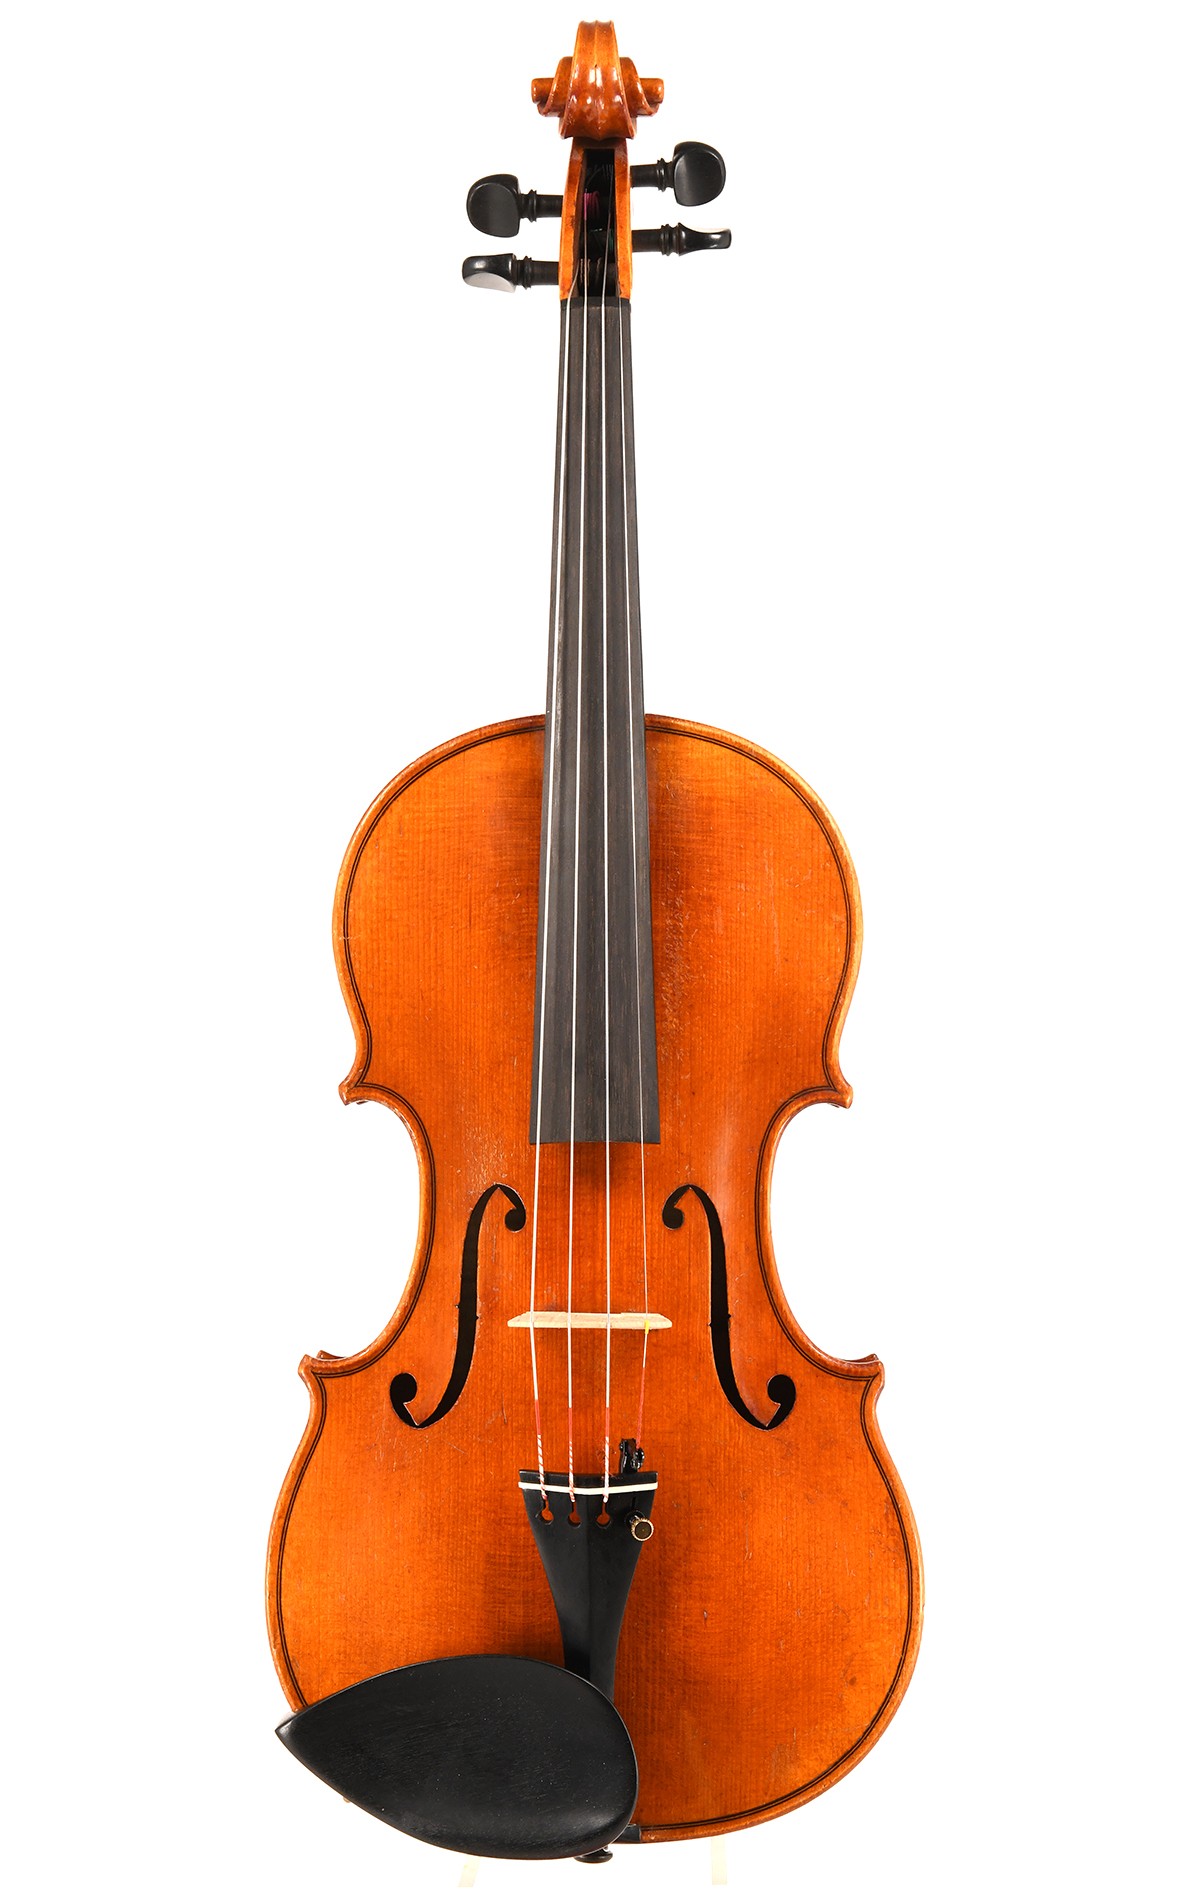 Old German violin after Guarneri del Gesu from Markneukirchen, around 1940